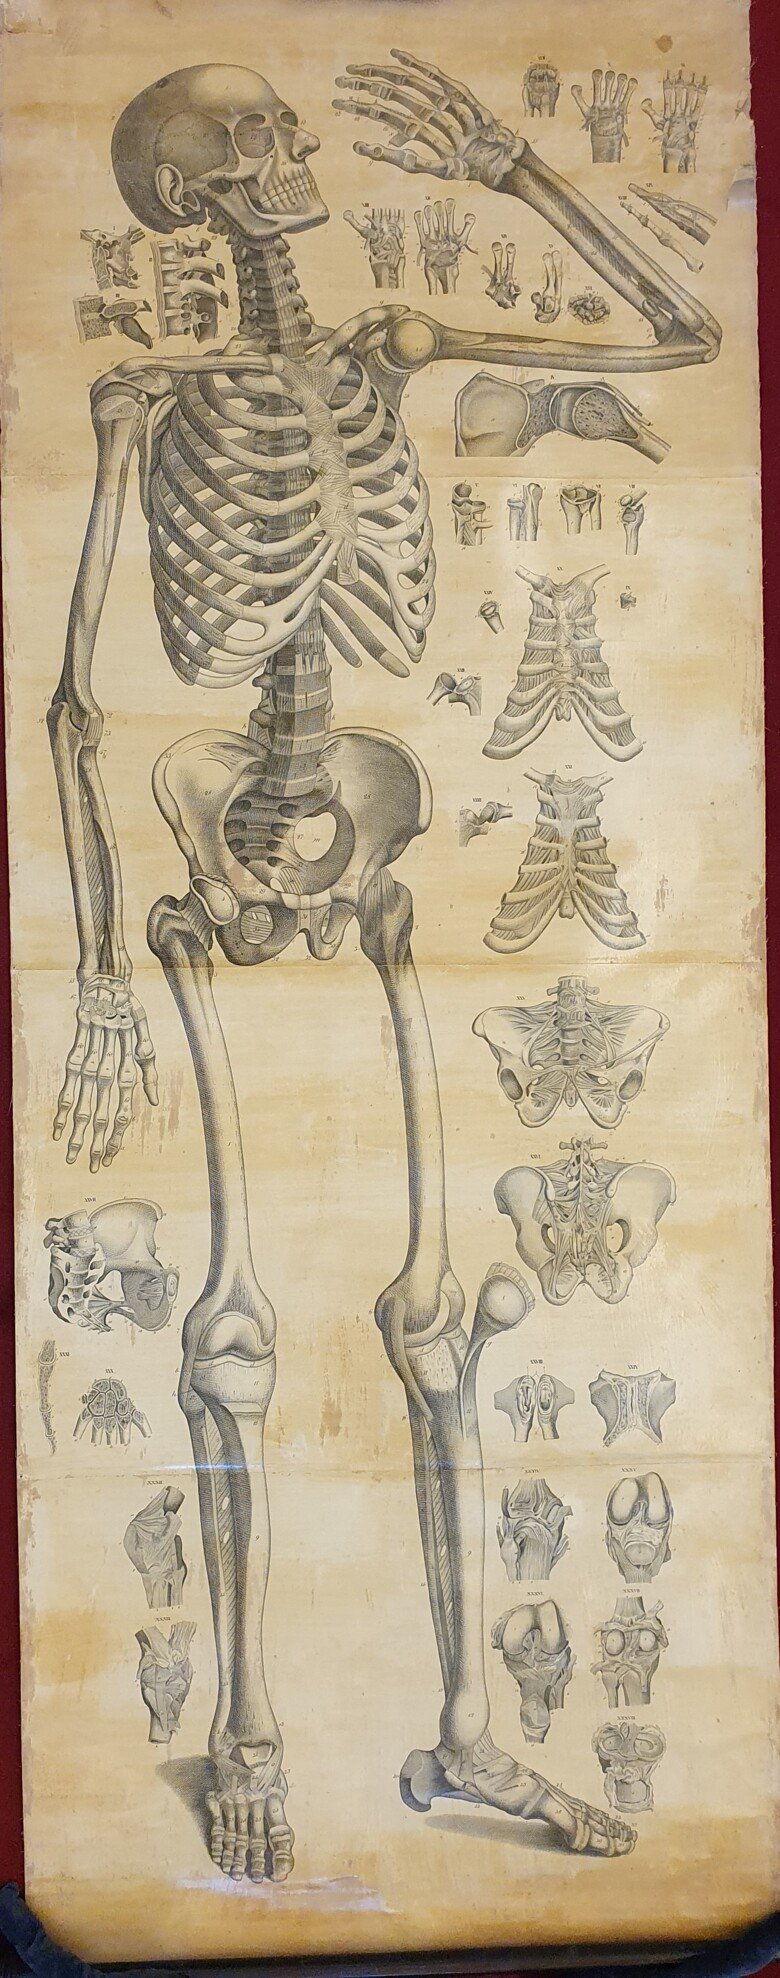 Weber, Moritz Ignaz. "Anatomischer Atlas des menschlichen Körpers in naturlicher Grösse, Lage und Verbindung der Thiele. In 84 Tafeln und erklärendem Texte."  (1848)